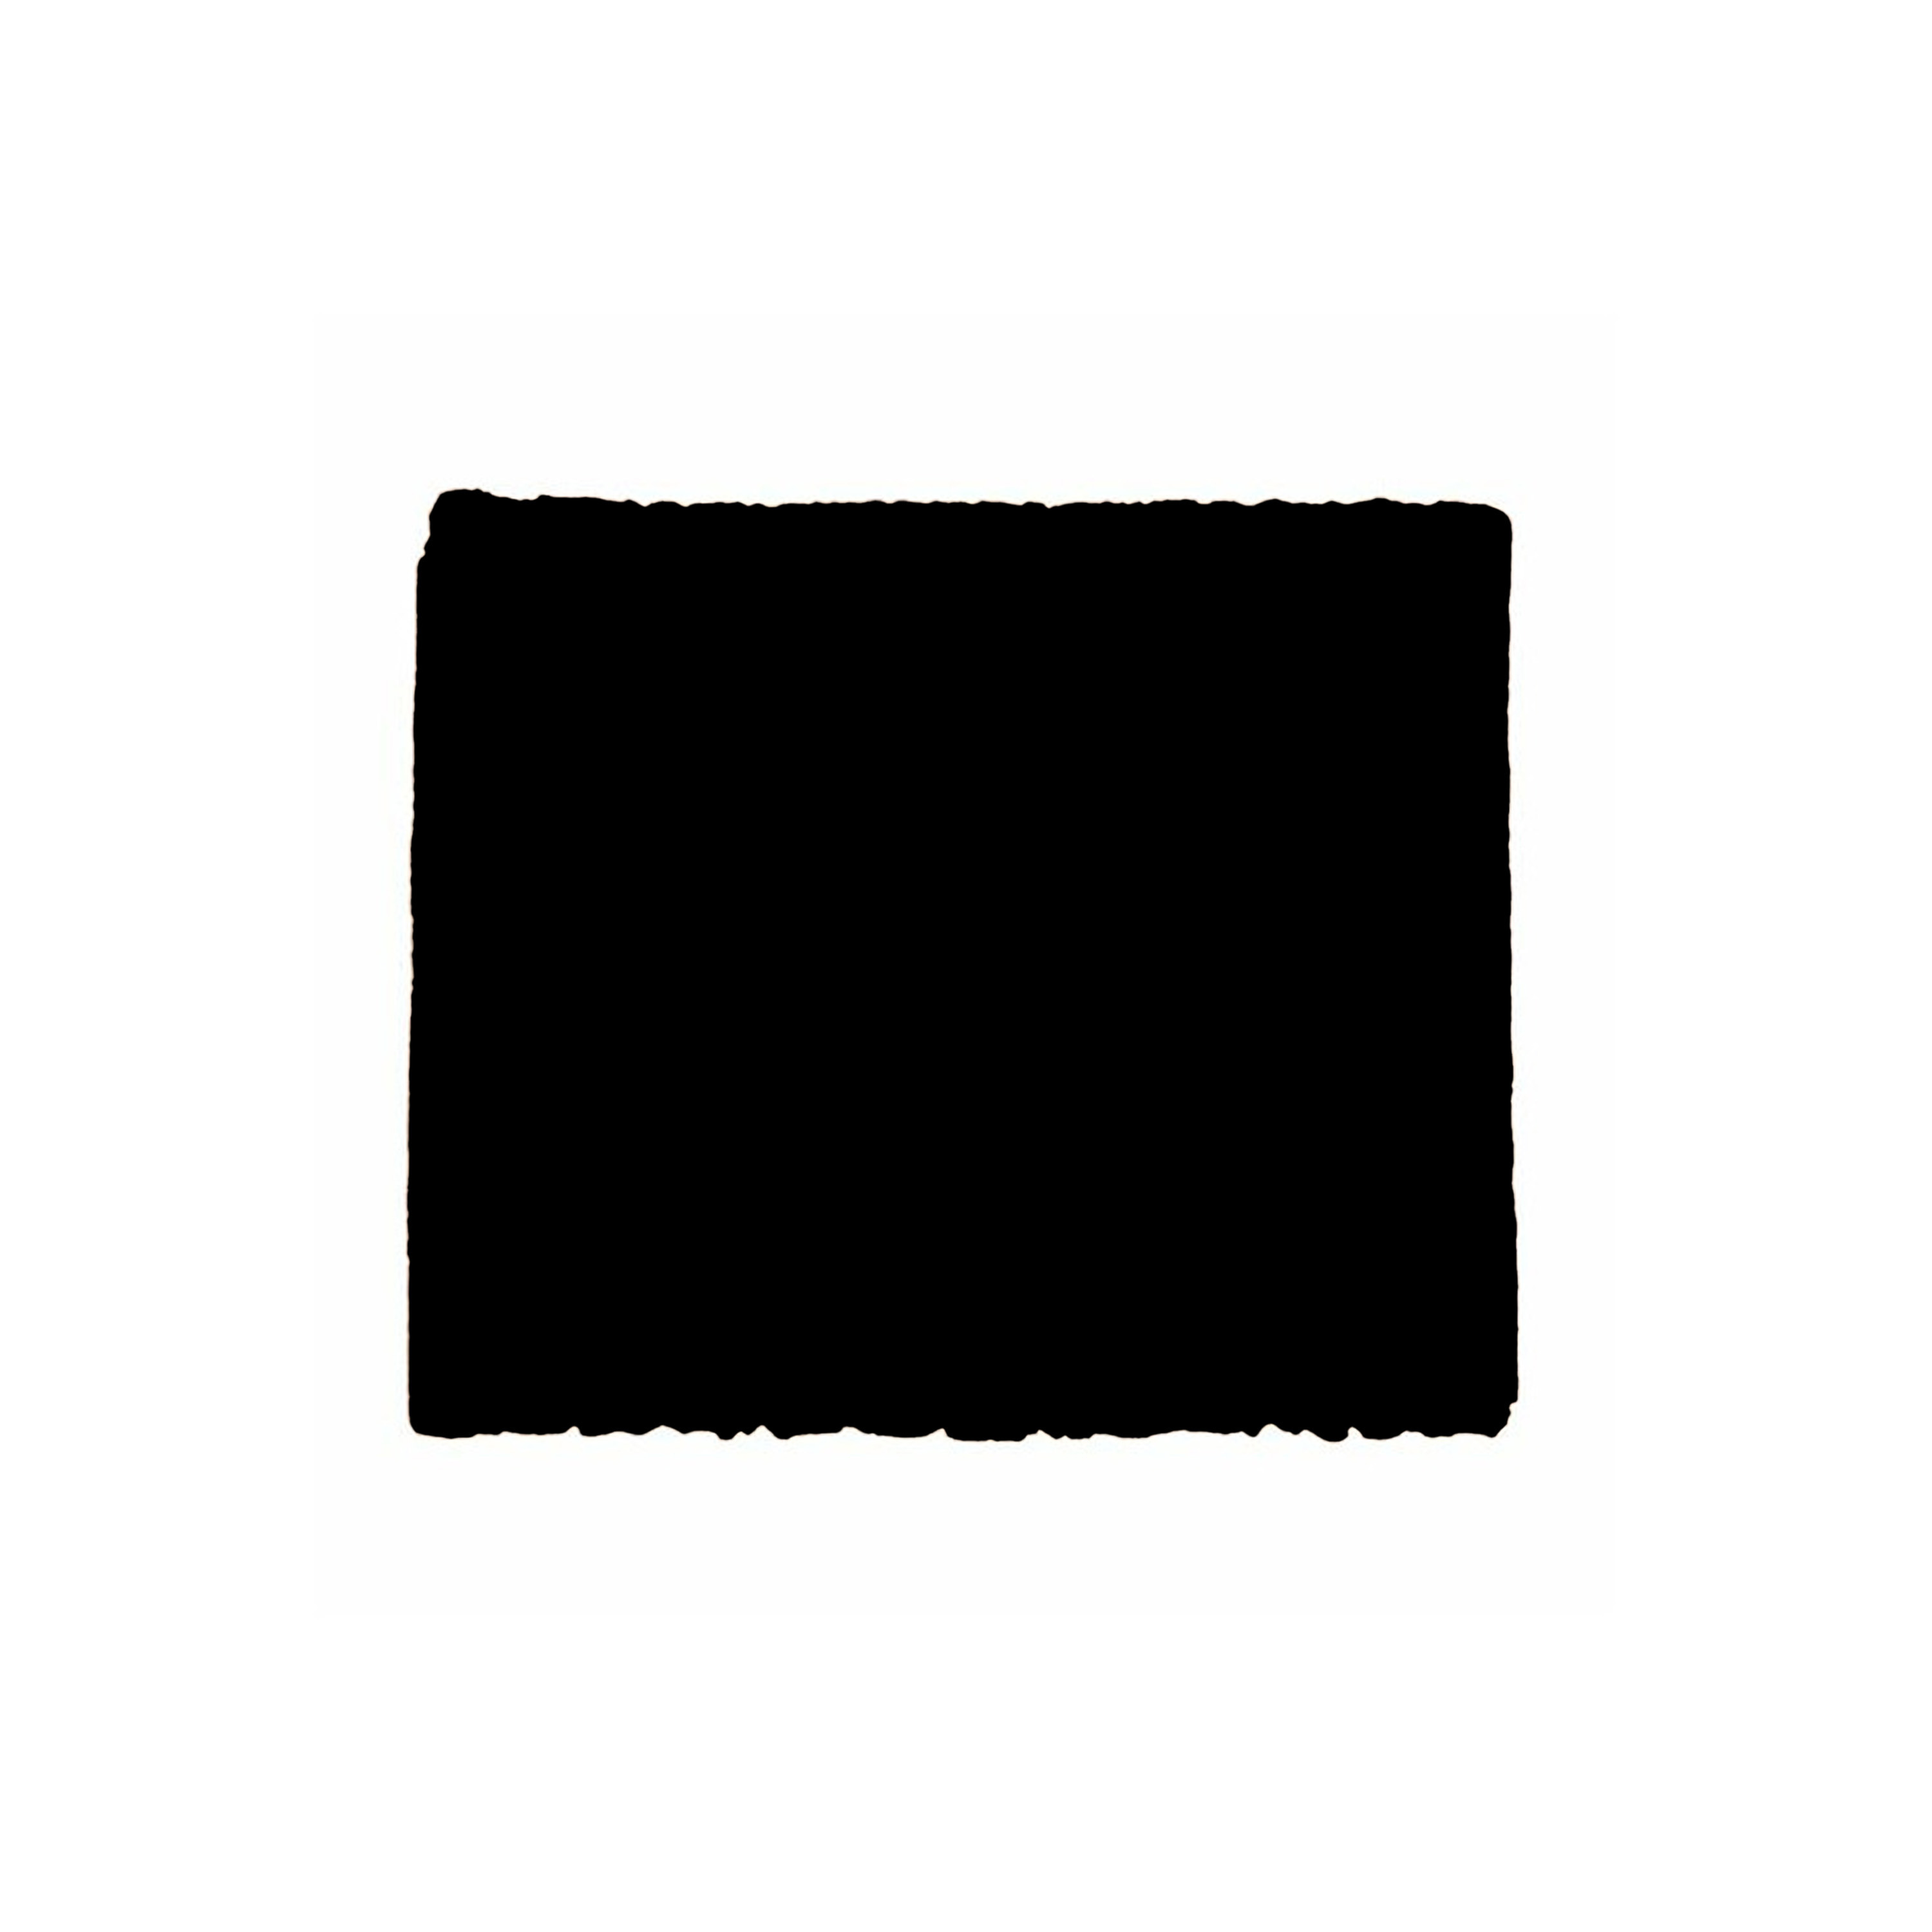 Afbeelding van Anti-krasvilt - 1x knipvel - zwart - 50 x 100 mm - rechthoek - zelfklevend - meubel beschermvilt